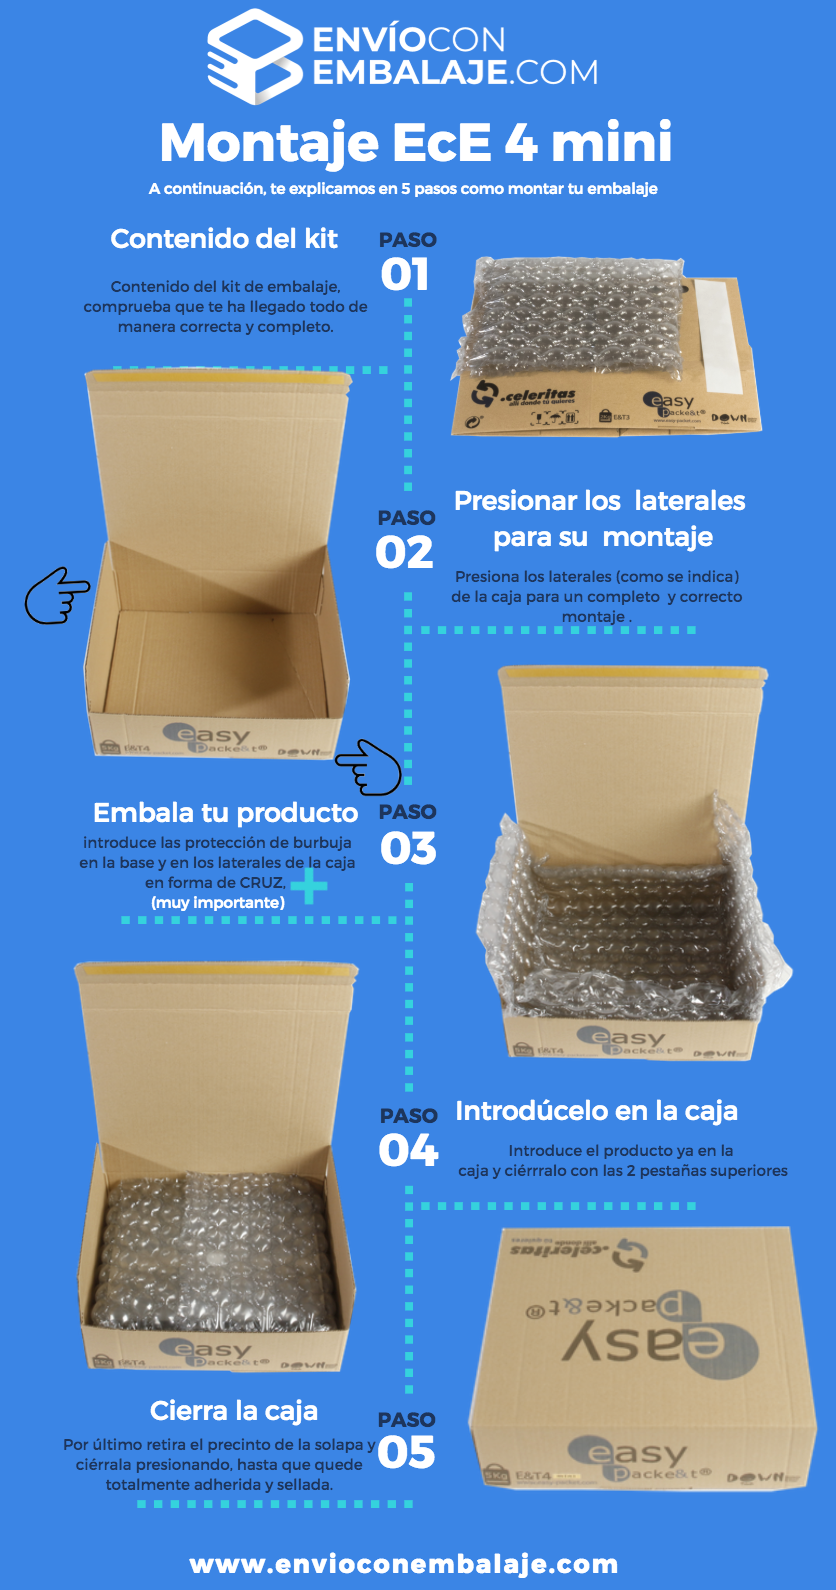 Embalaje y packaging. Diferentes tipos de embalajes ofertados por envioconembalaje: cajas de cartón, vinos, documentos y maletas. Instrucción de montaje.